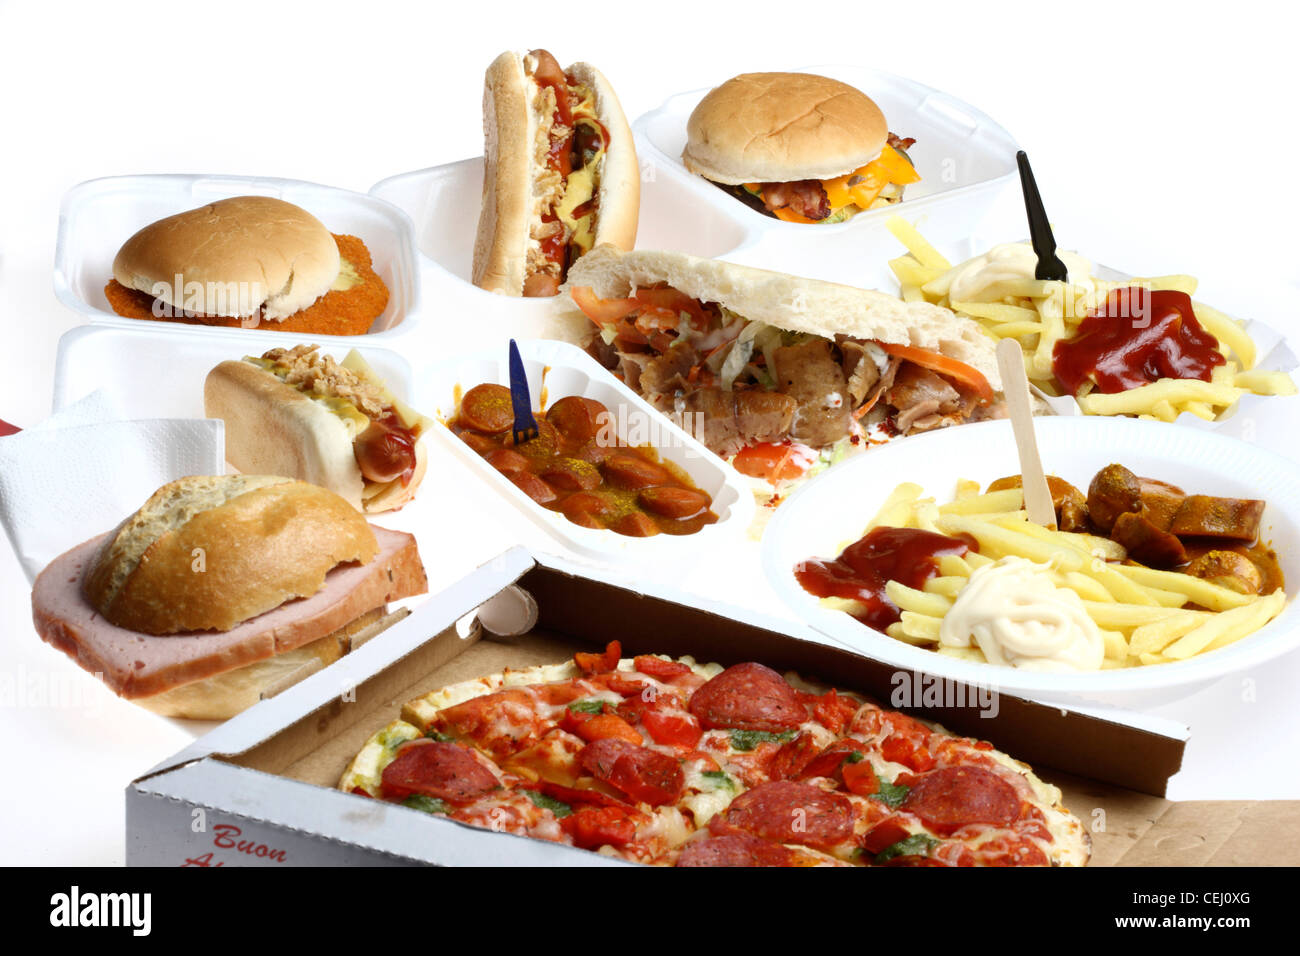 Ernährung. Zusammenstellung, verschiedene Fast-Food-Gerichte zu komponieren. Hot-Dog, Cheeseburger, türkischen Kebab, Pizza, Würstchen, Sandwich. Stockfoto